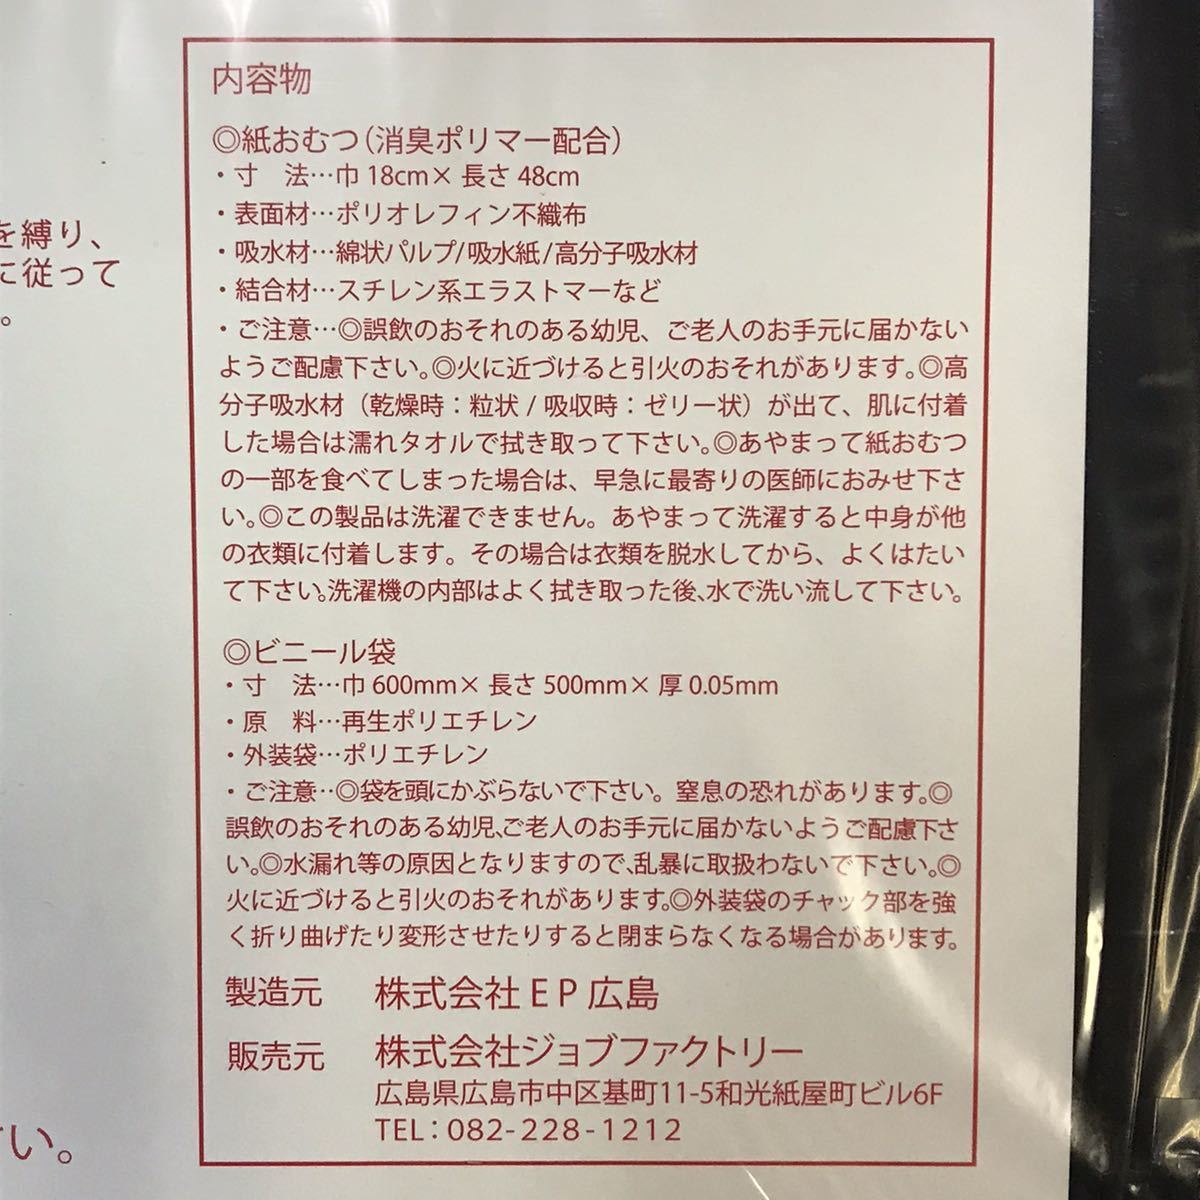  бесплатная доставка Hiroshima Toyo Carp предотвращение бедствий коробка для простой туалет предотвращение бедствий комплект .. пакет есть / картон сборка тип простой туалет / для экстренных случаев туалет / ржавчина простой туалет 